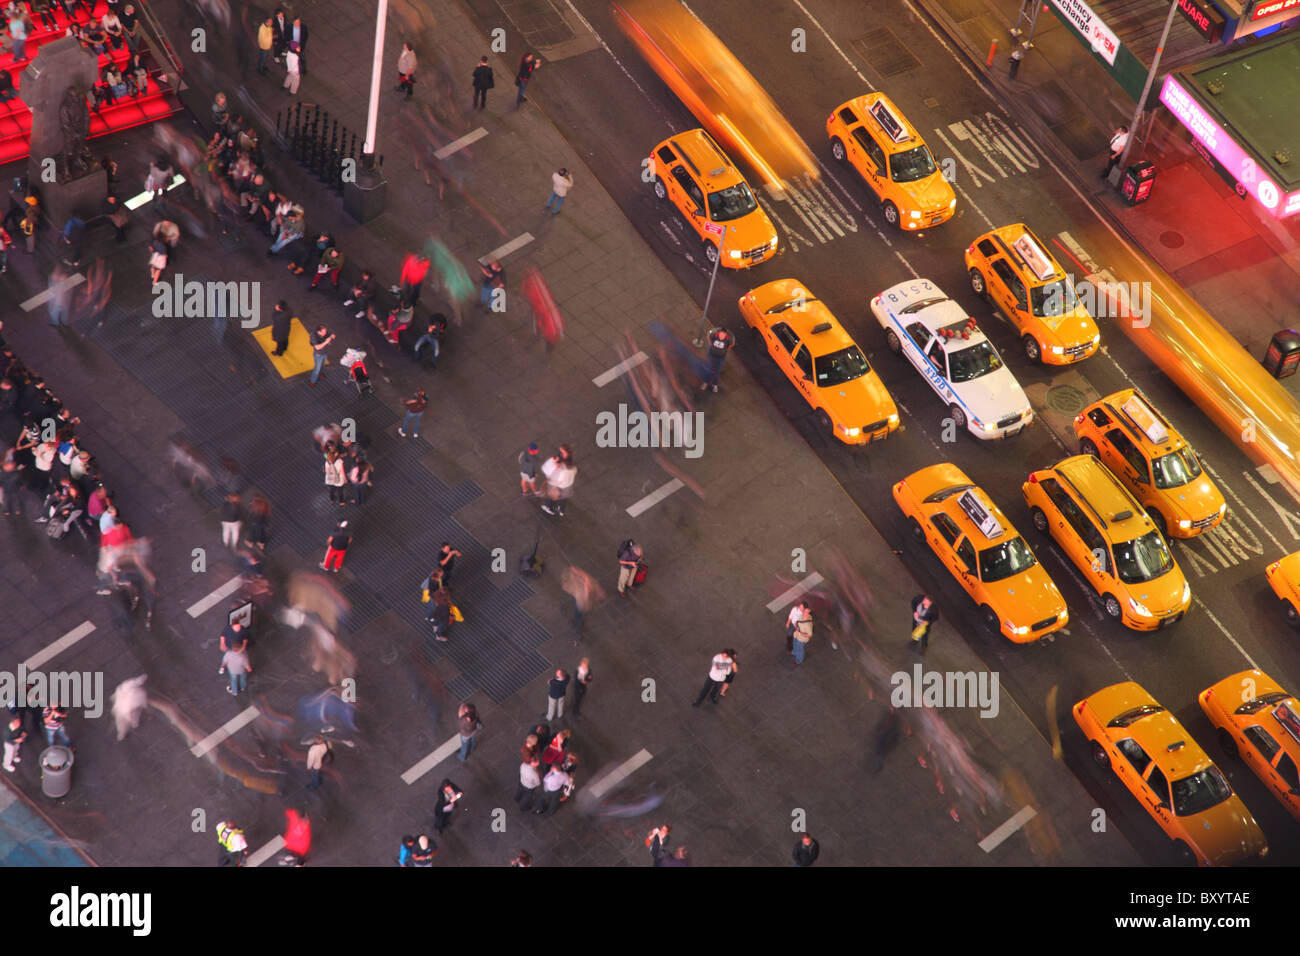 Coup de frais généraux du taxi et personnes marchant, Times Square, Manhattan, New York City Banque D'Images